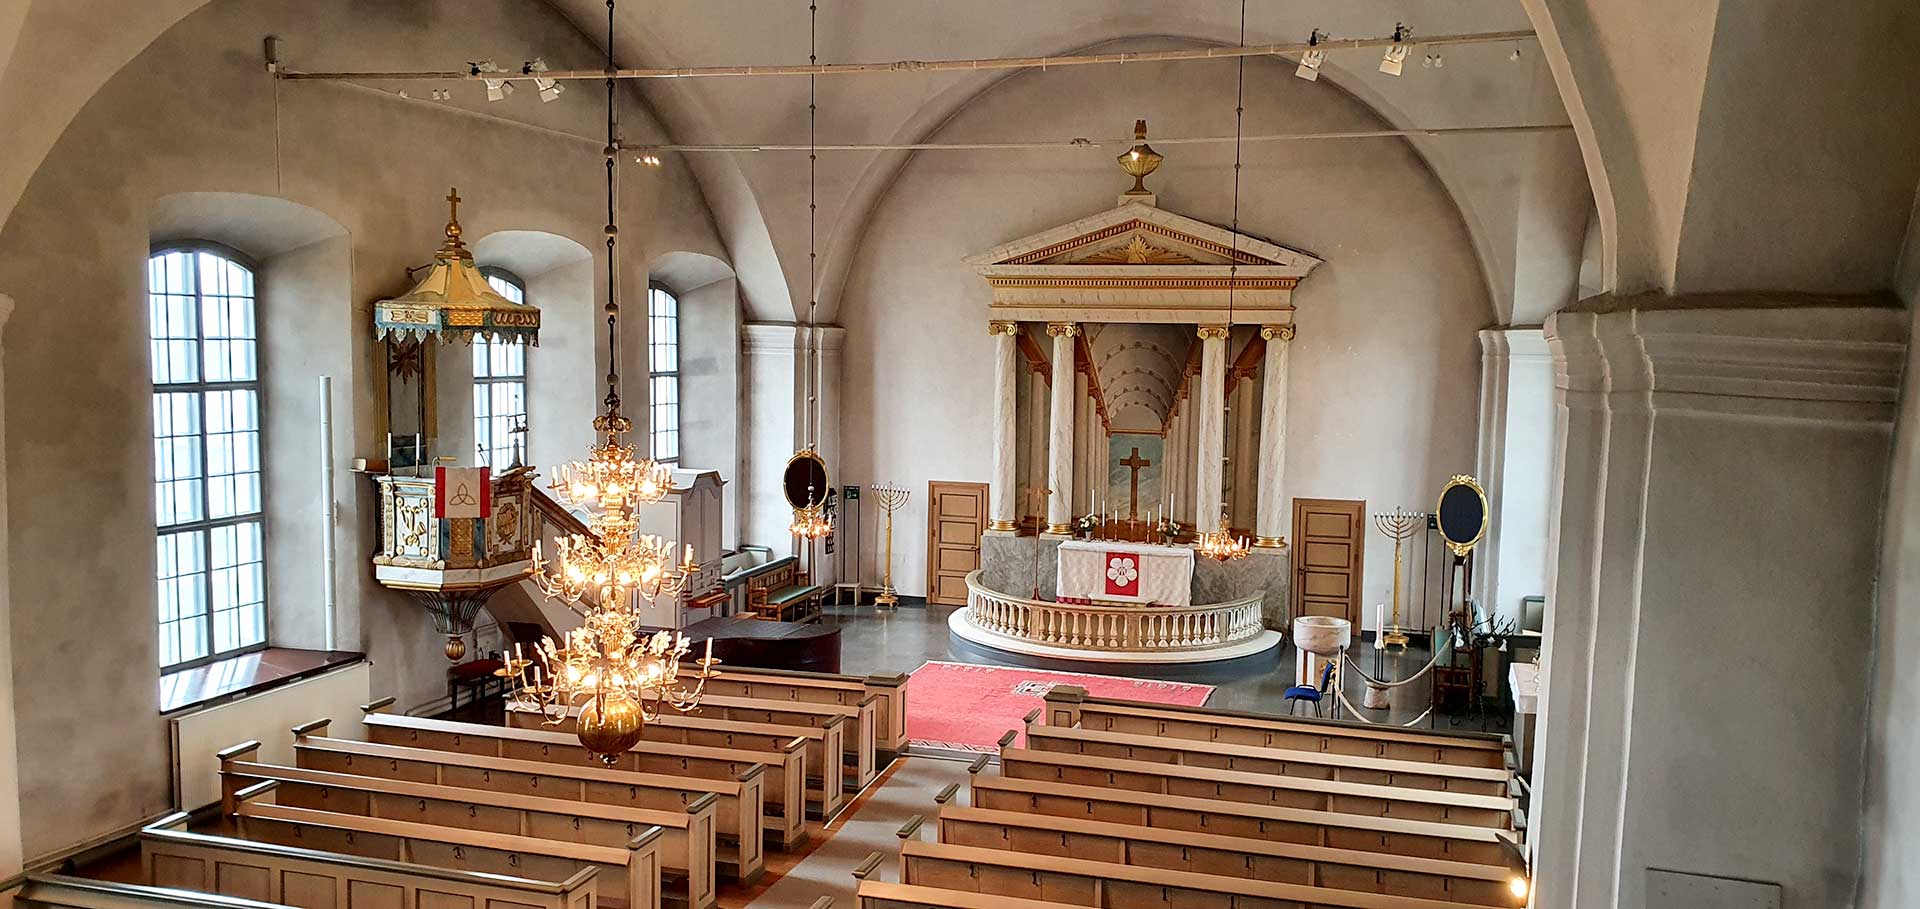 Åhls kyrka interör, altare